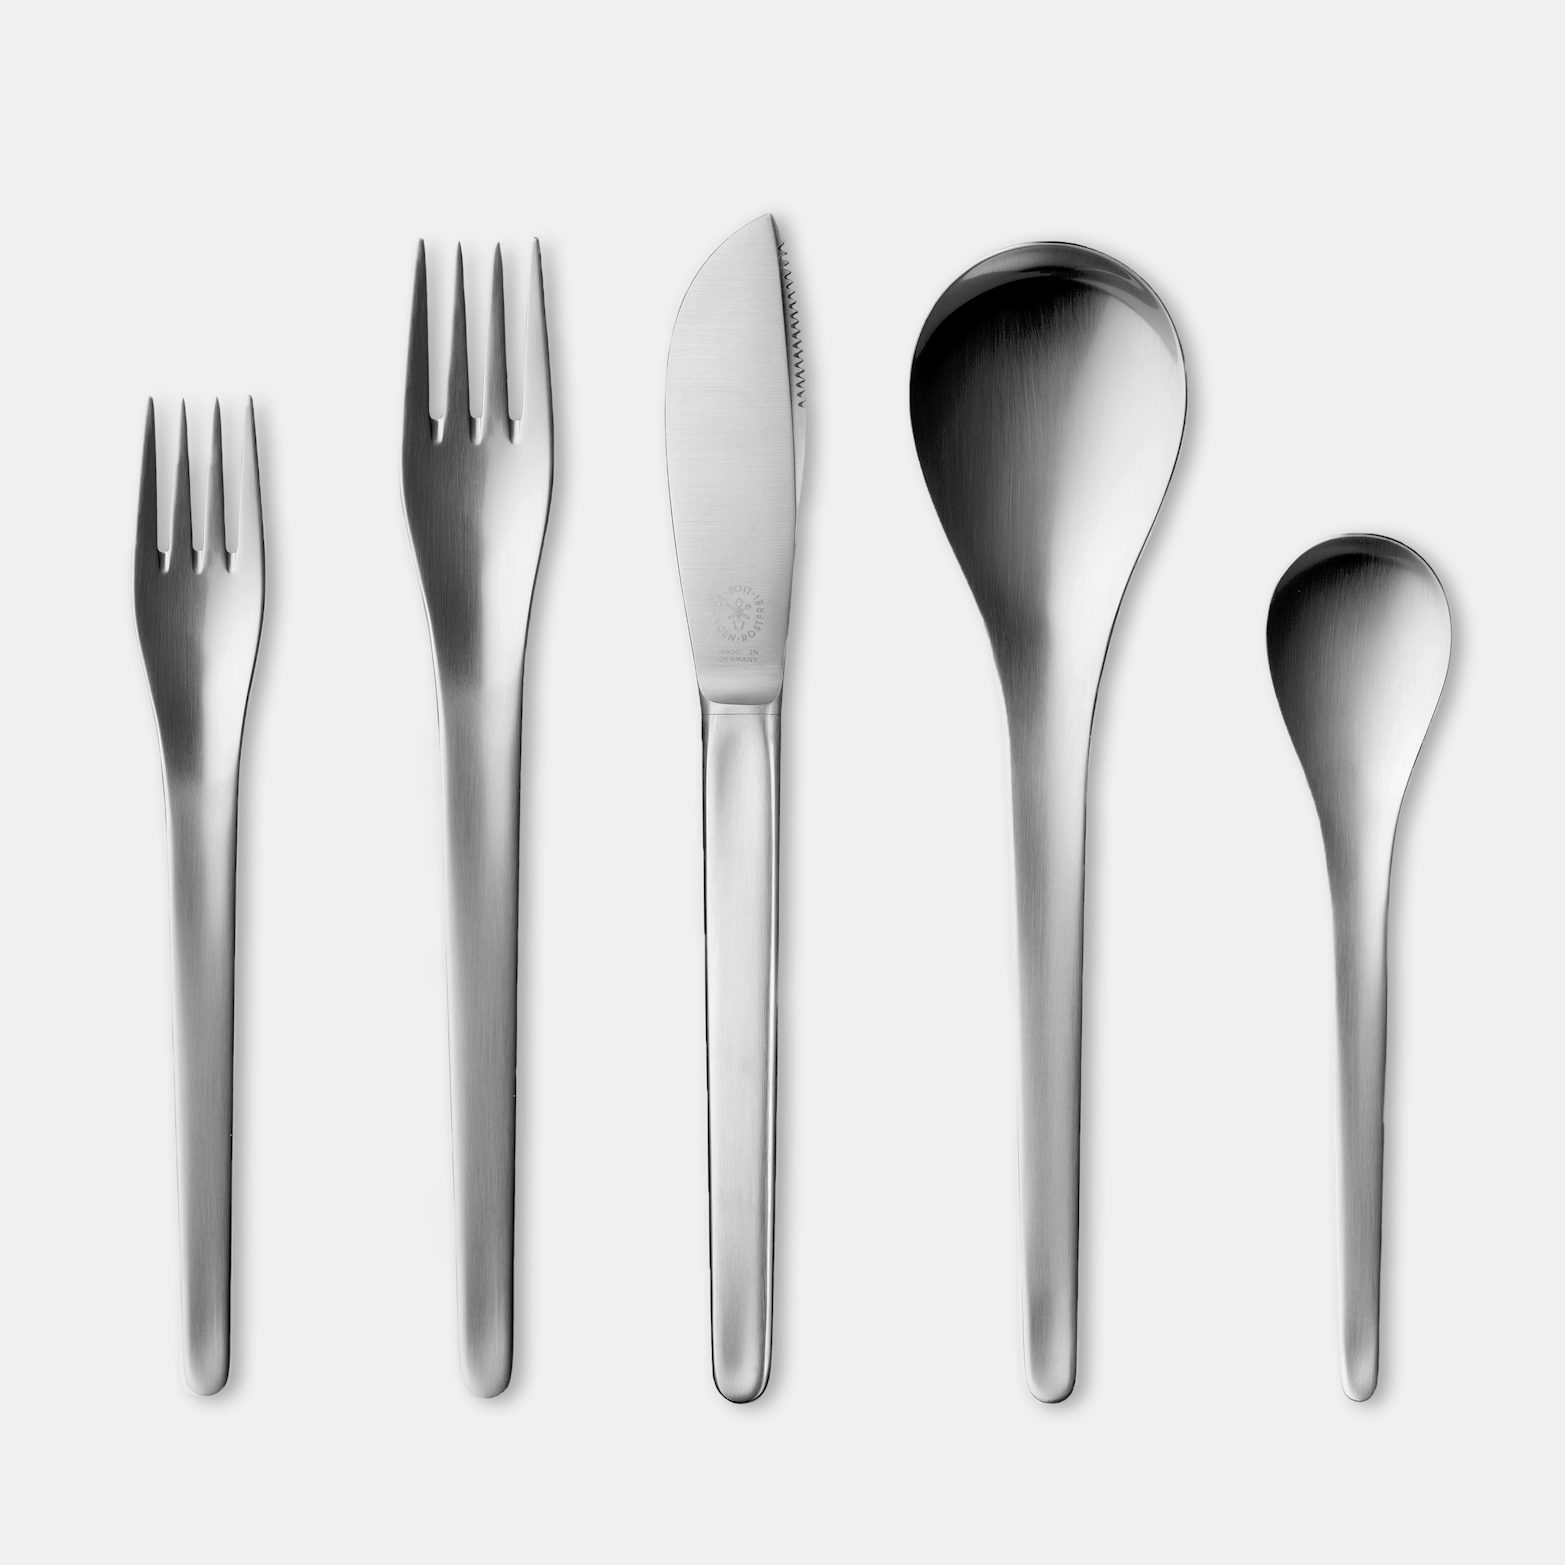 Pott 2722 5 piece Cutlery contextgallery 1 f0